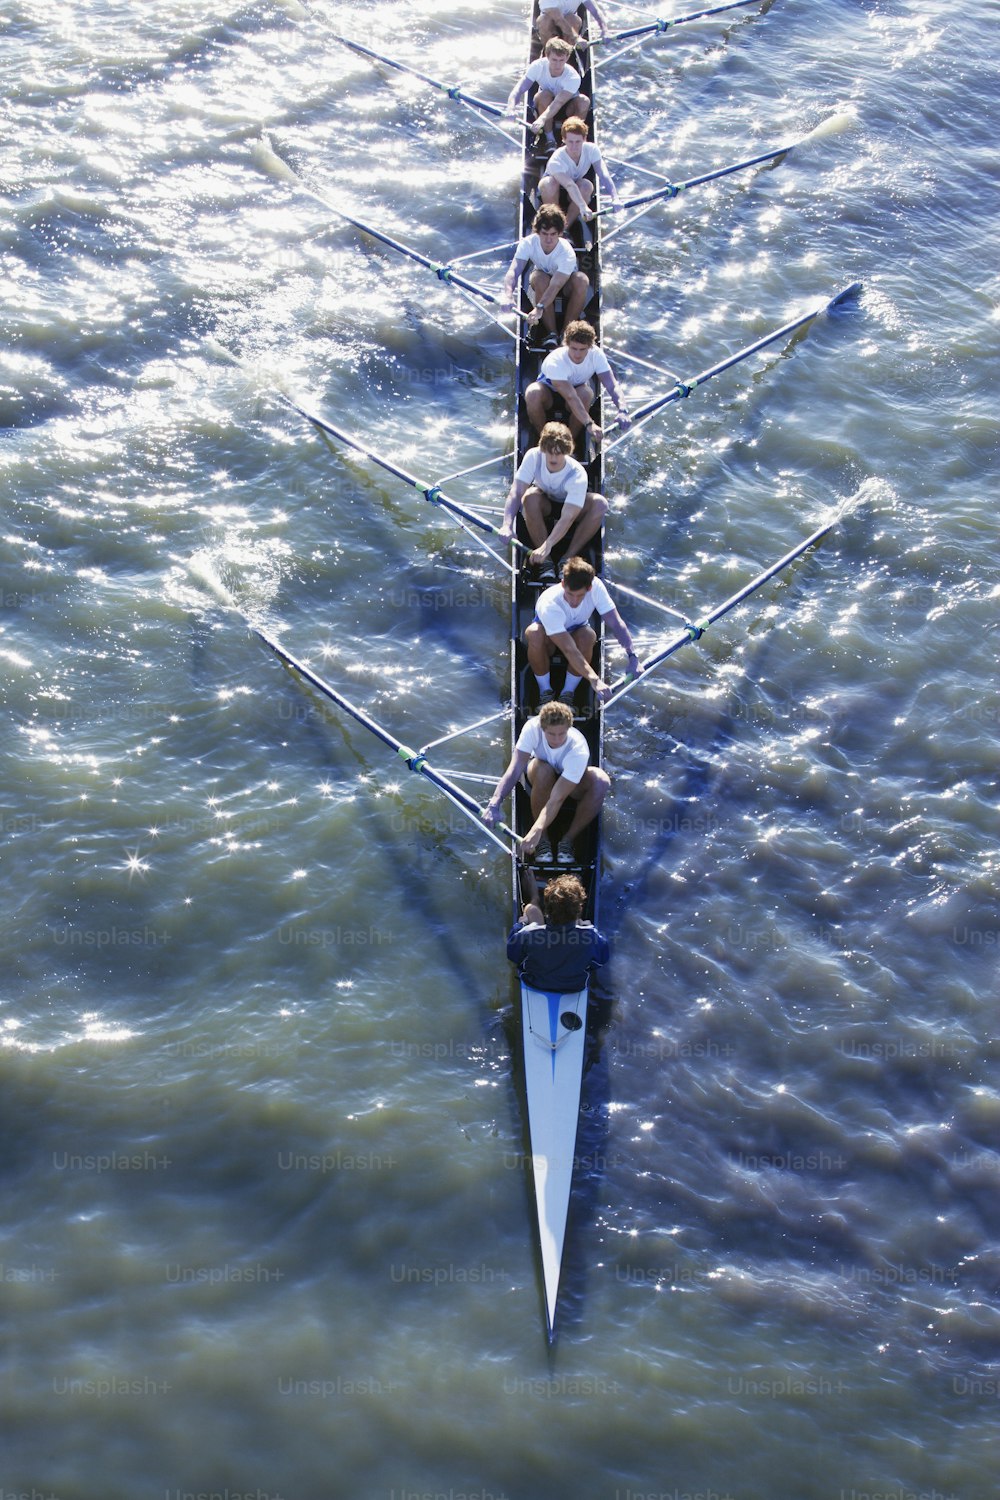 Un groupe de personnes ramant un long bateau dans l’eau